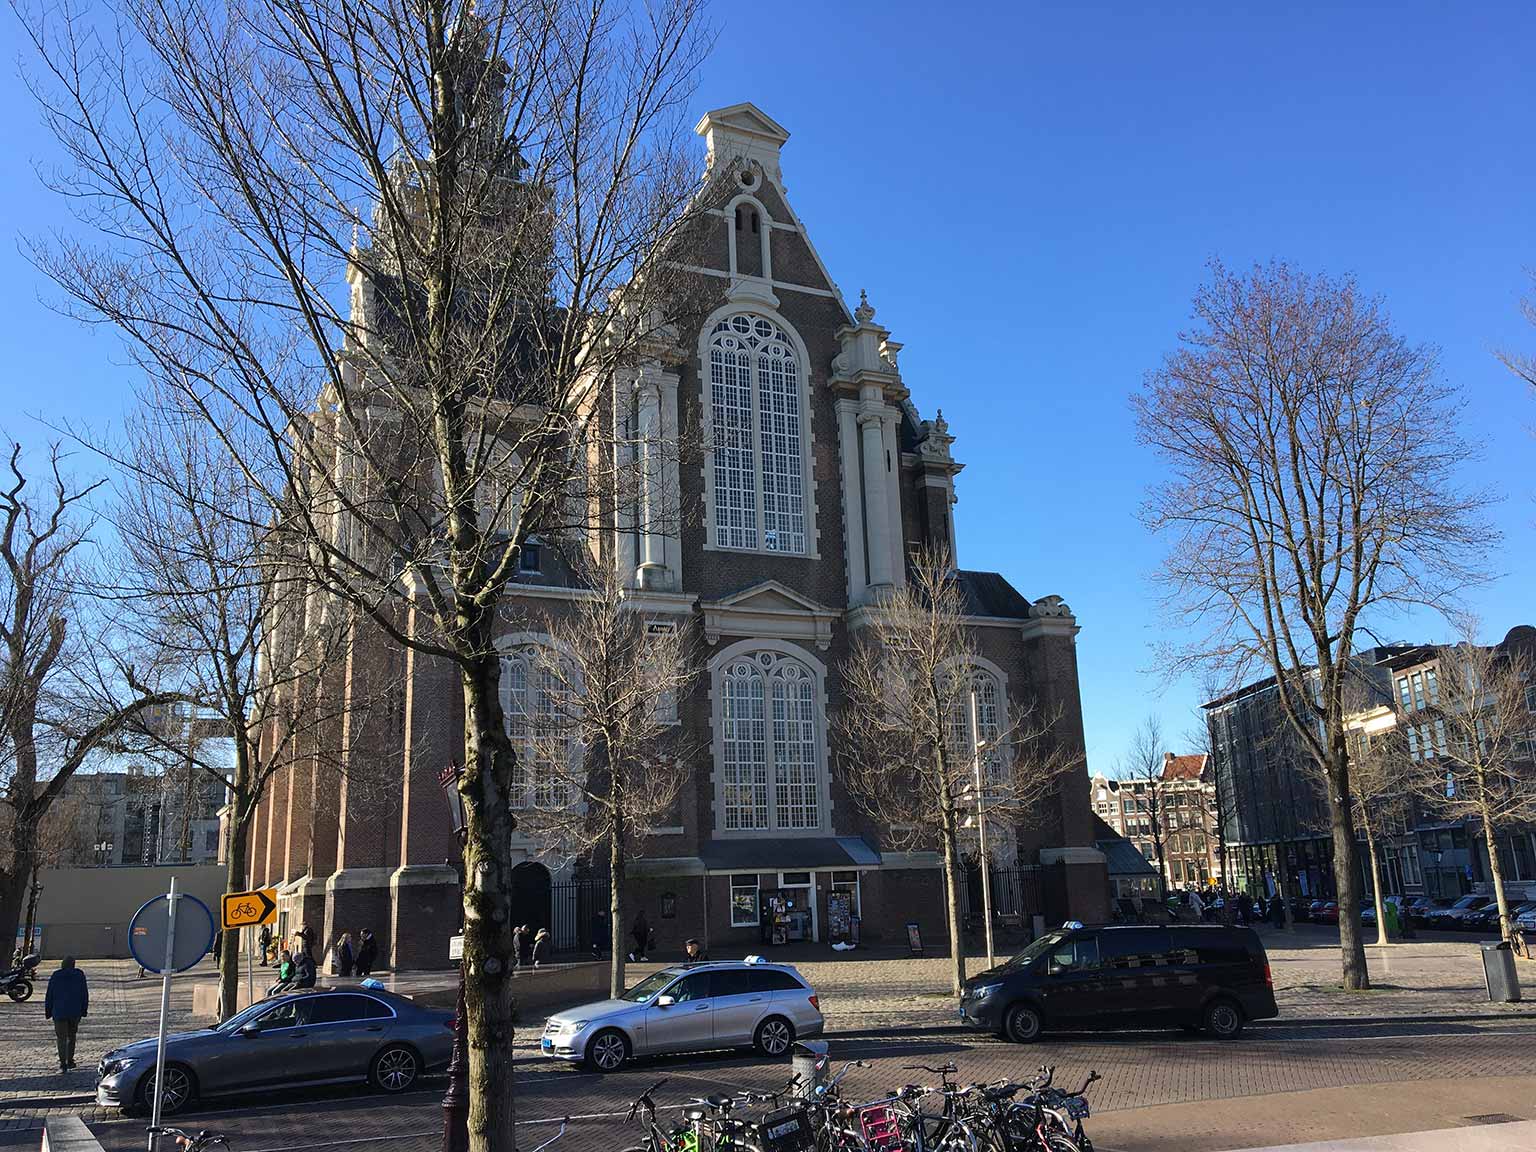 Westerkerk and Westermarkt, Amsterdam, viewed from Keizersgracht side